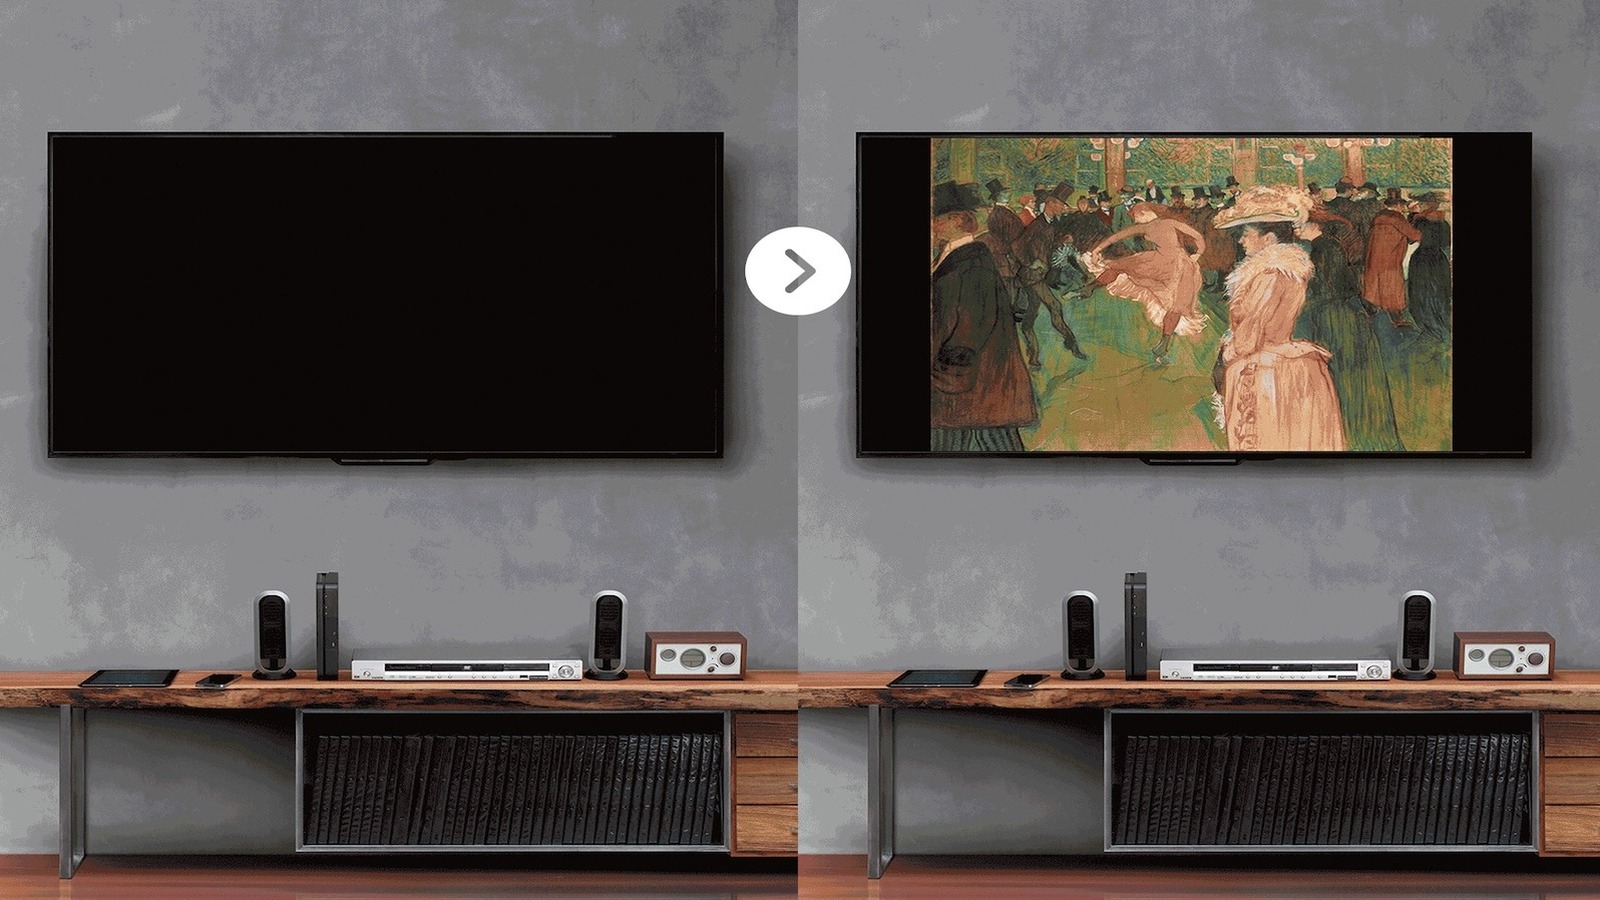 Este dispositivo convierte su televisor en una galería de arte digital sin necesidad de un marco Samsung